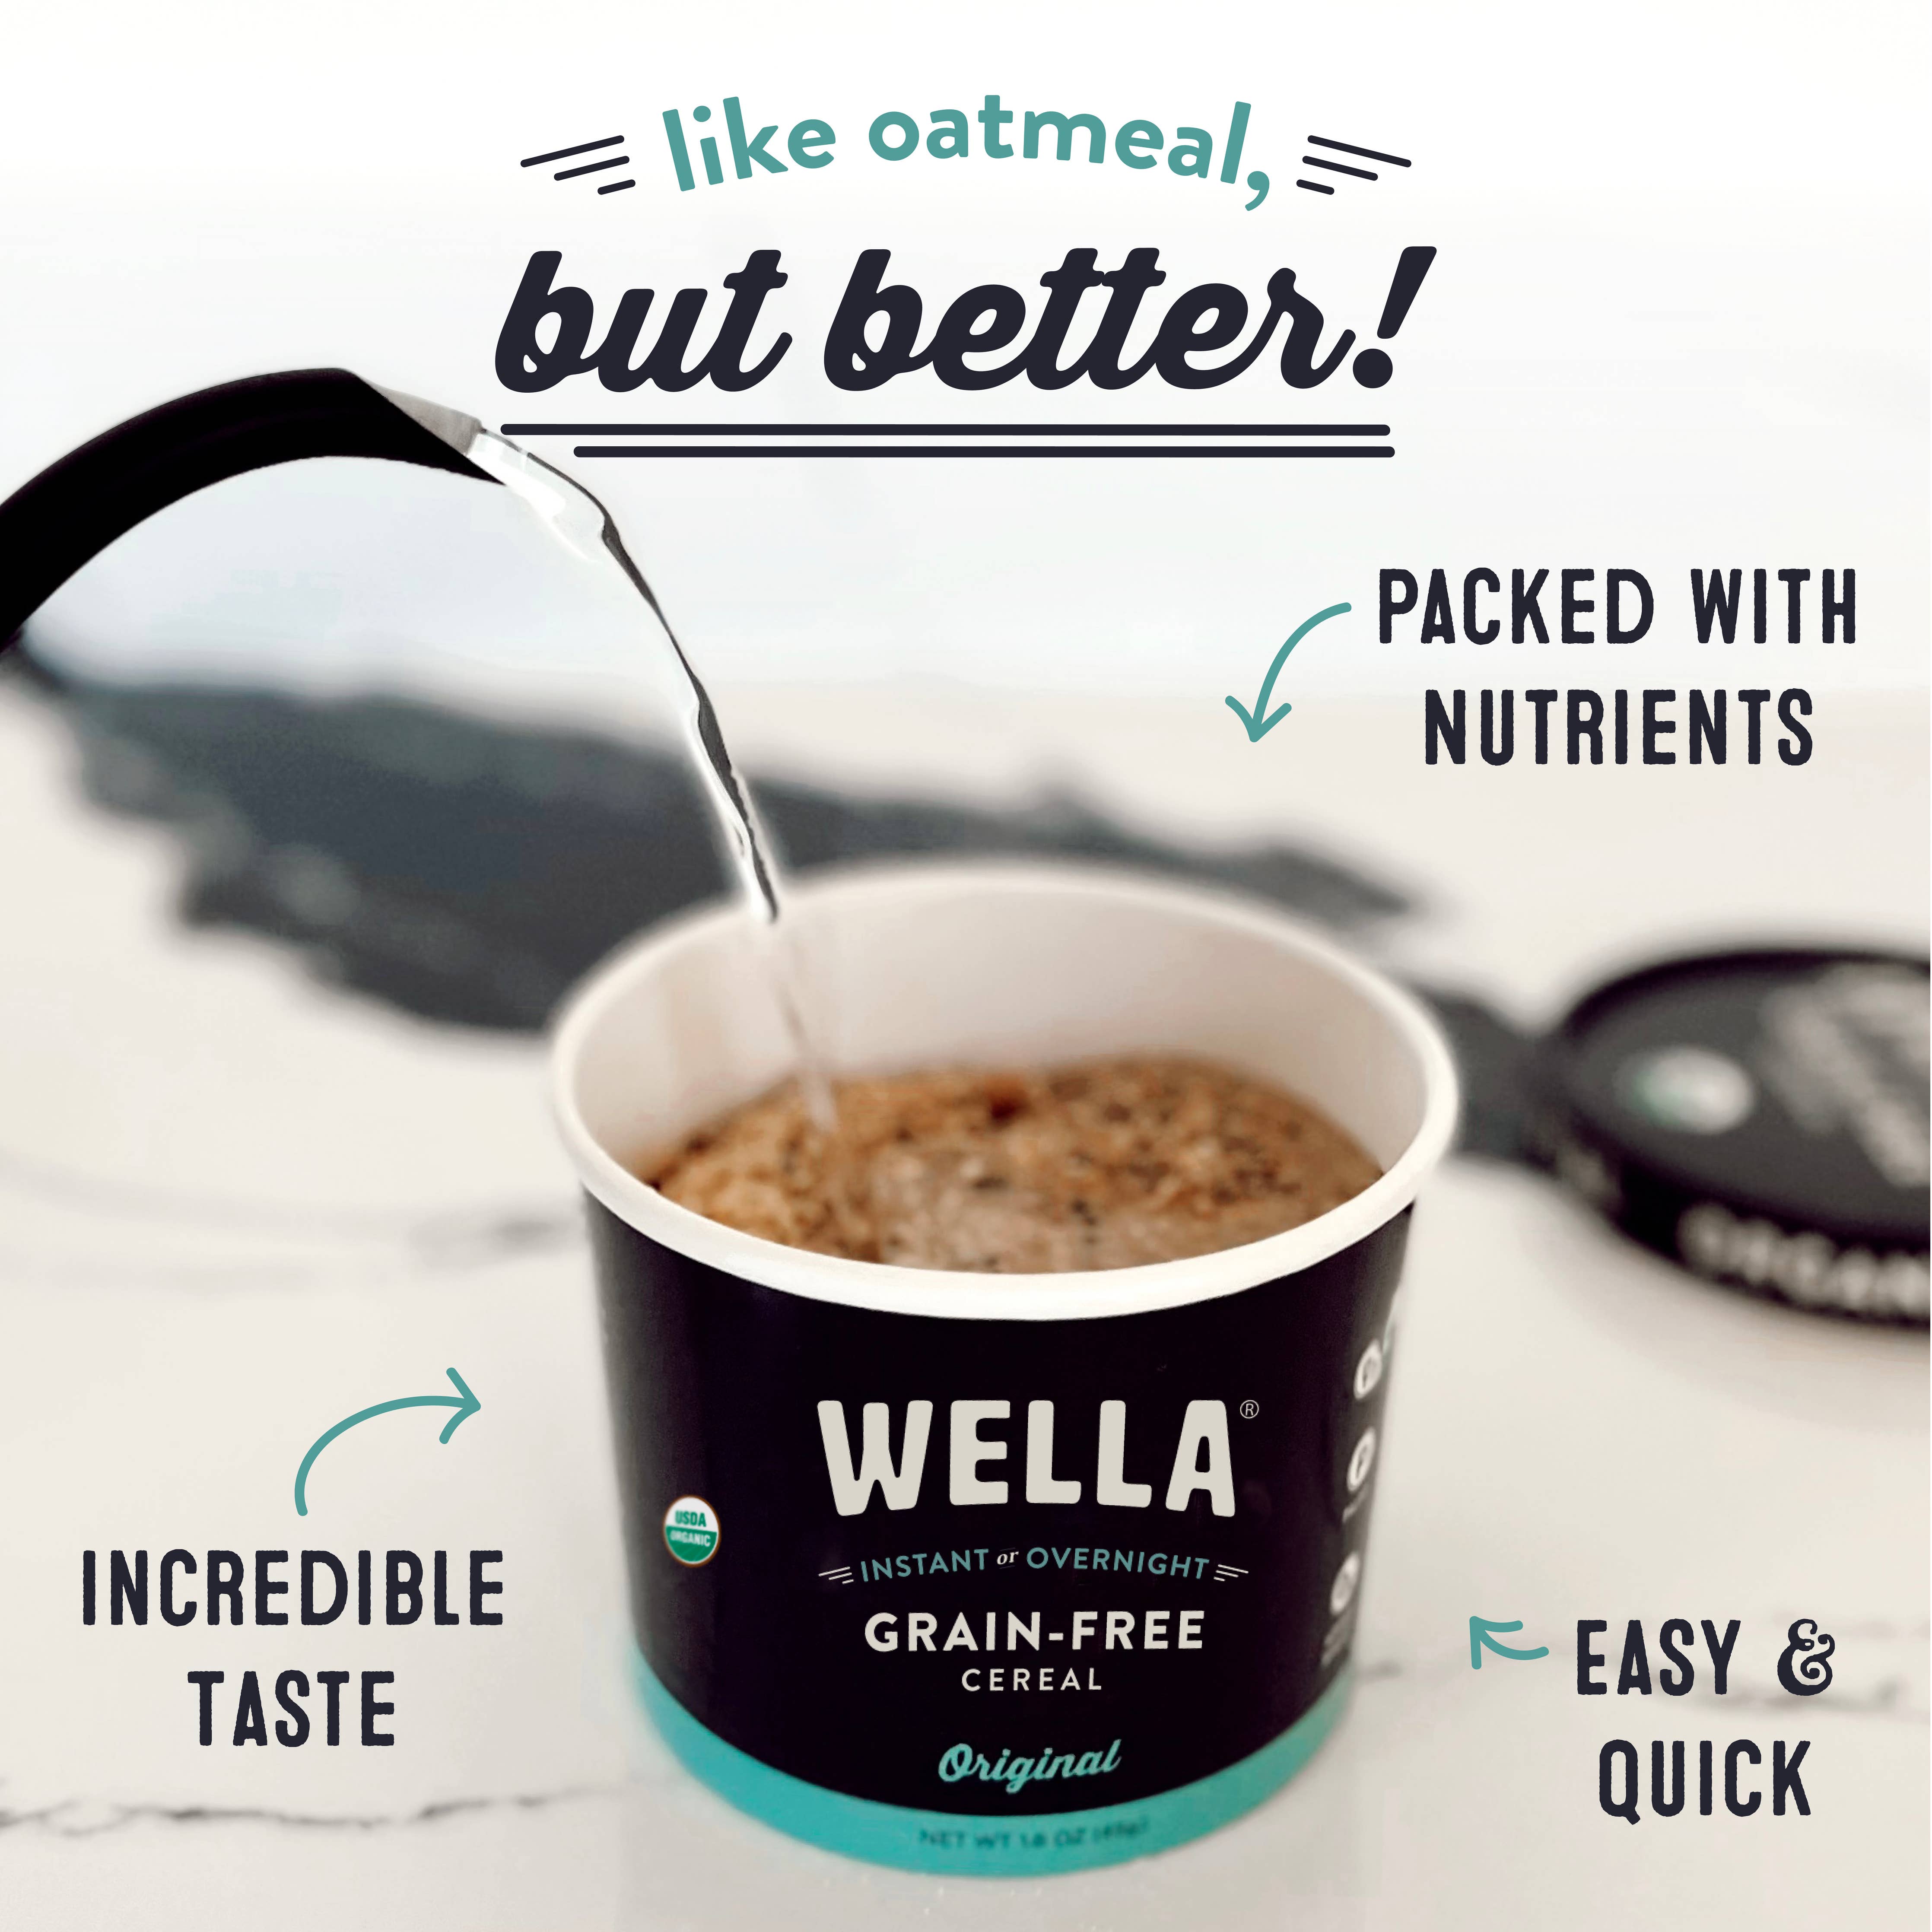 Wella Grain-Free Cereal Original Cup-3